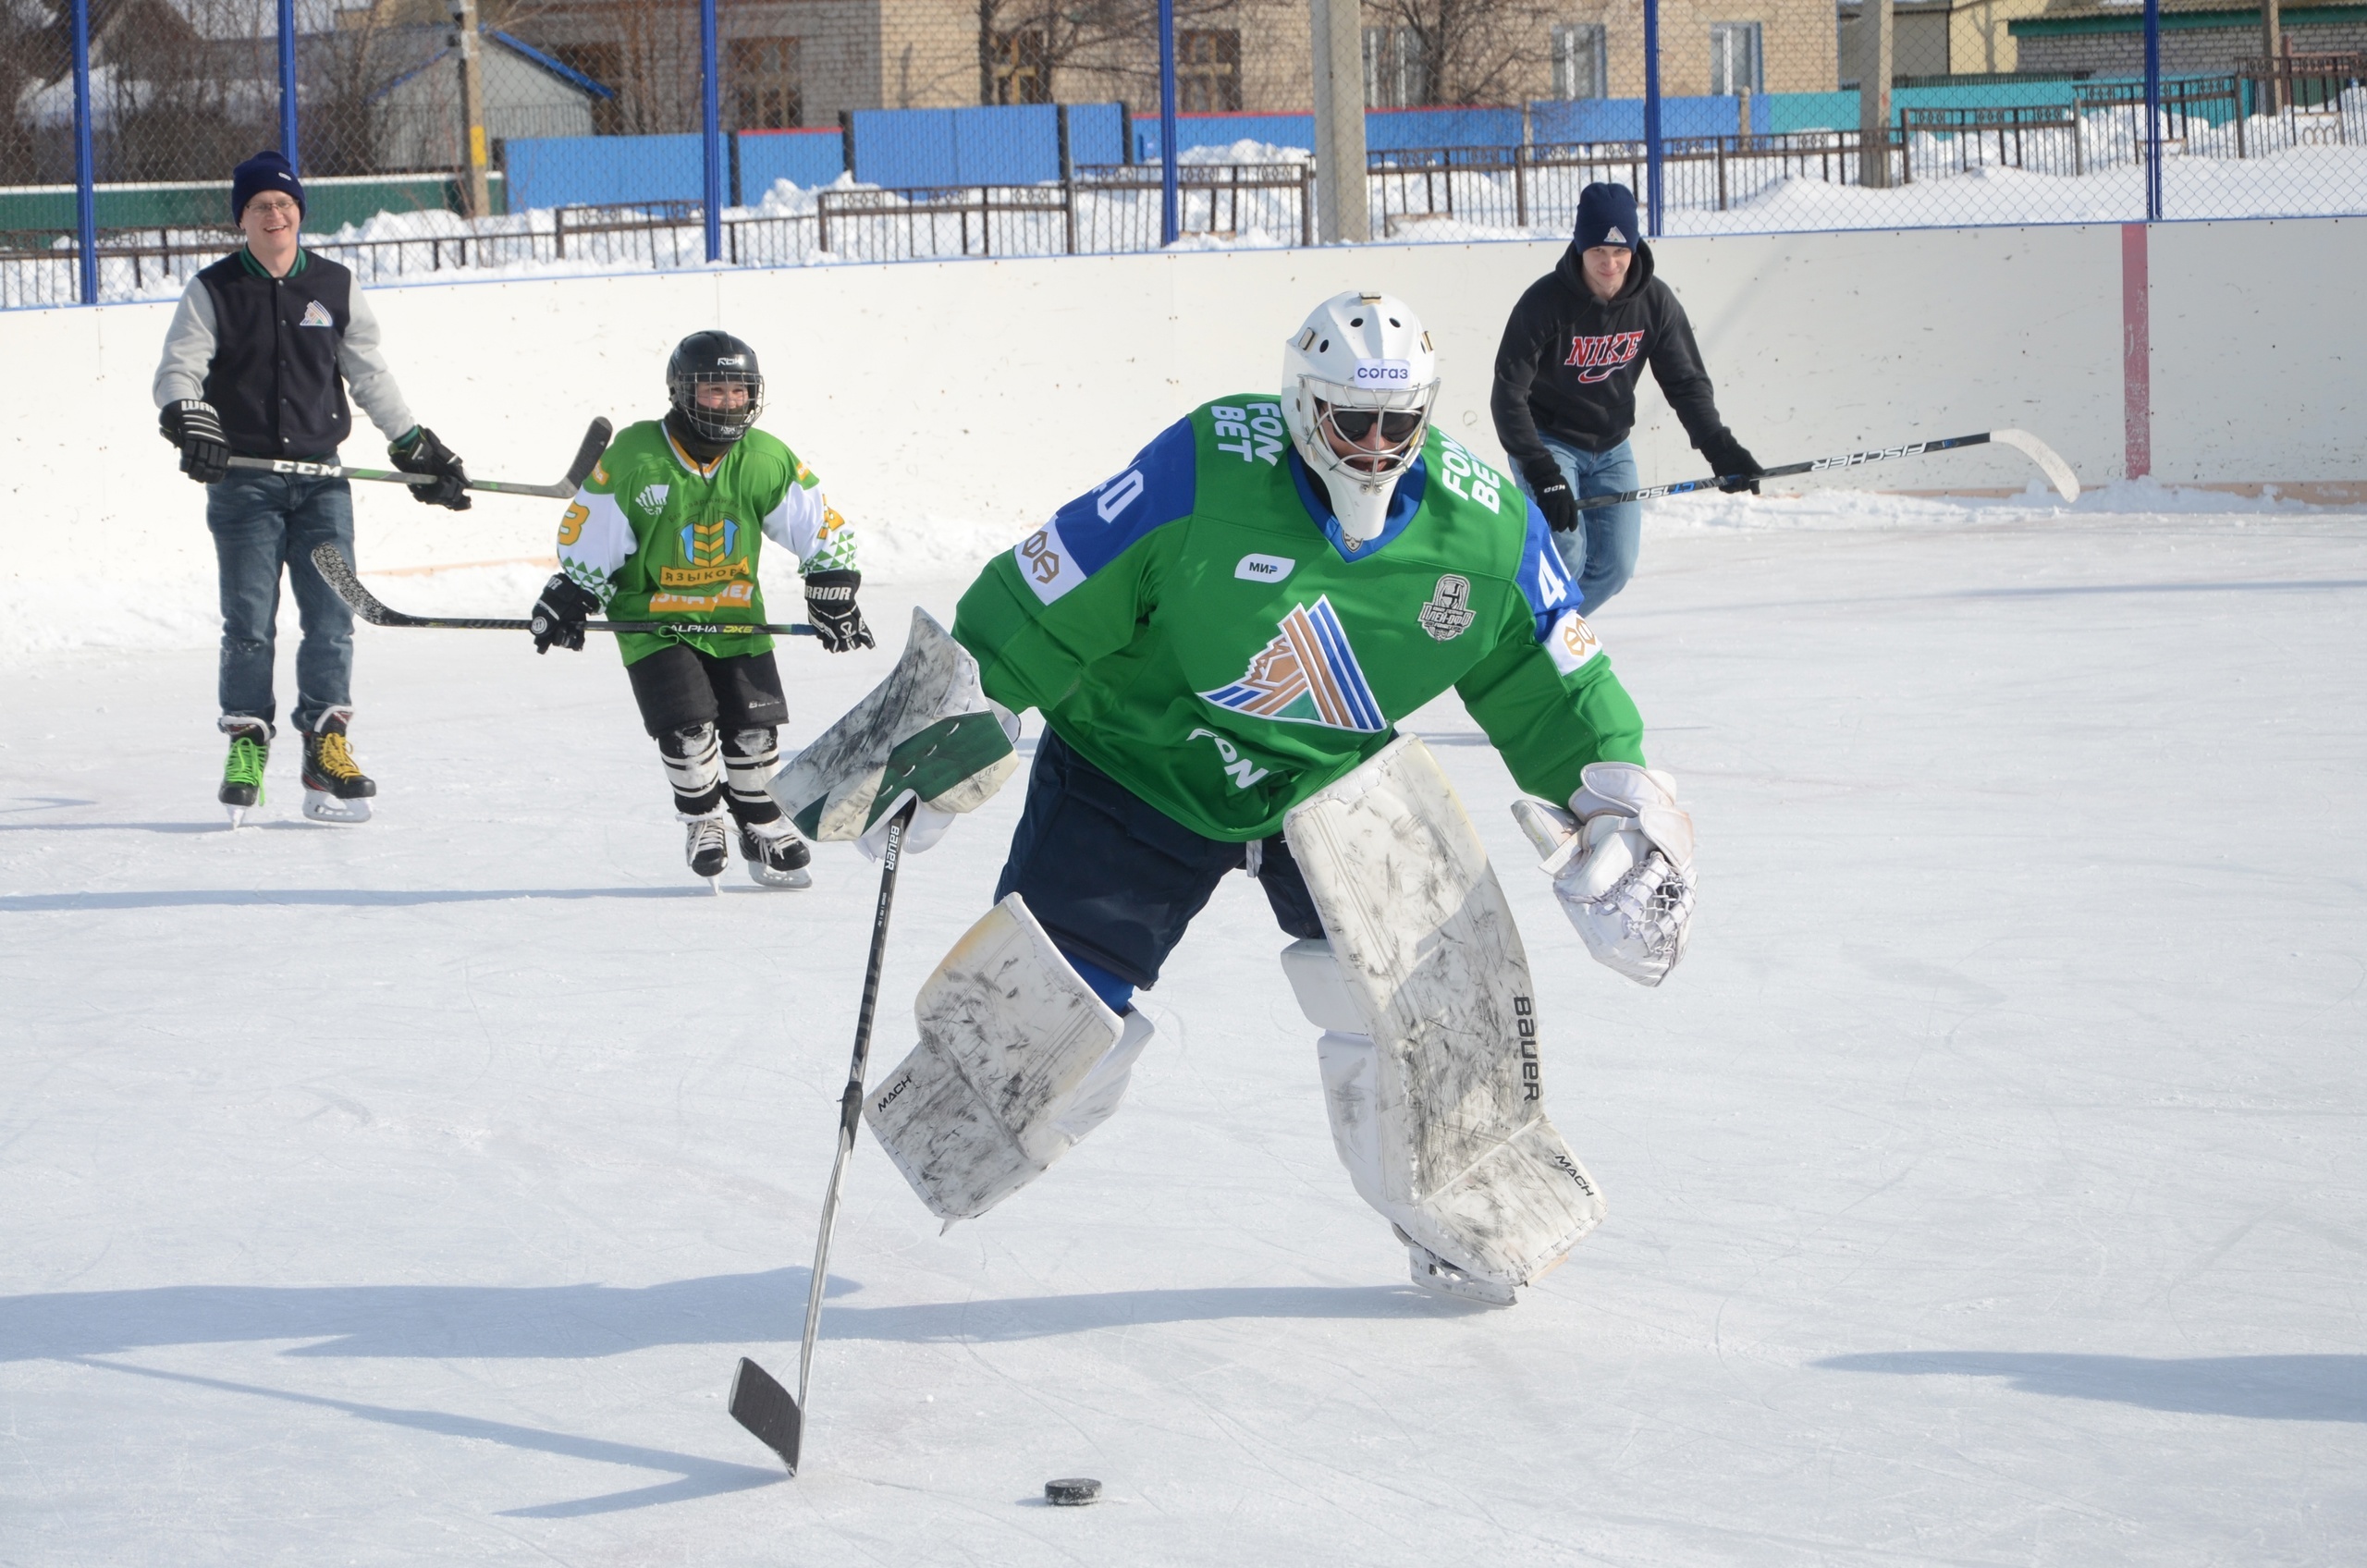 В Благоварском районе побывали игроки хоккейного клуба «САЛАВАТ ЮЛАЕВ»